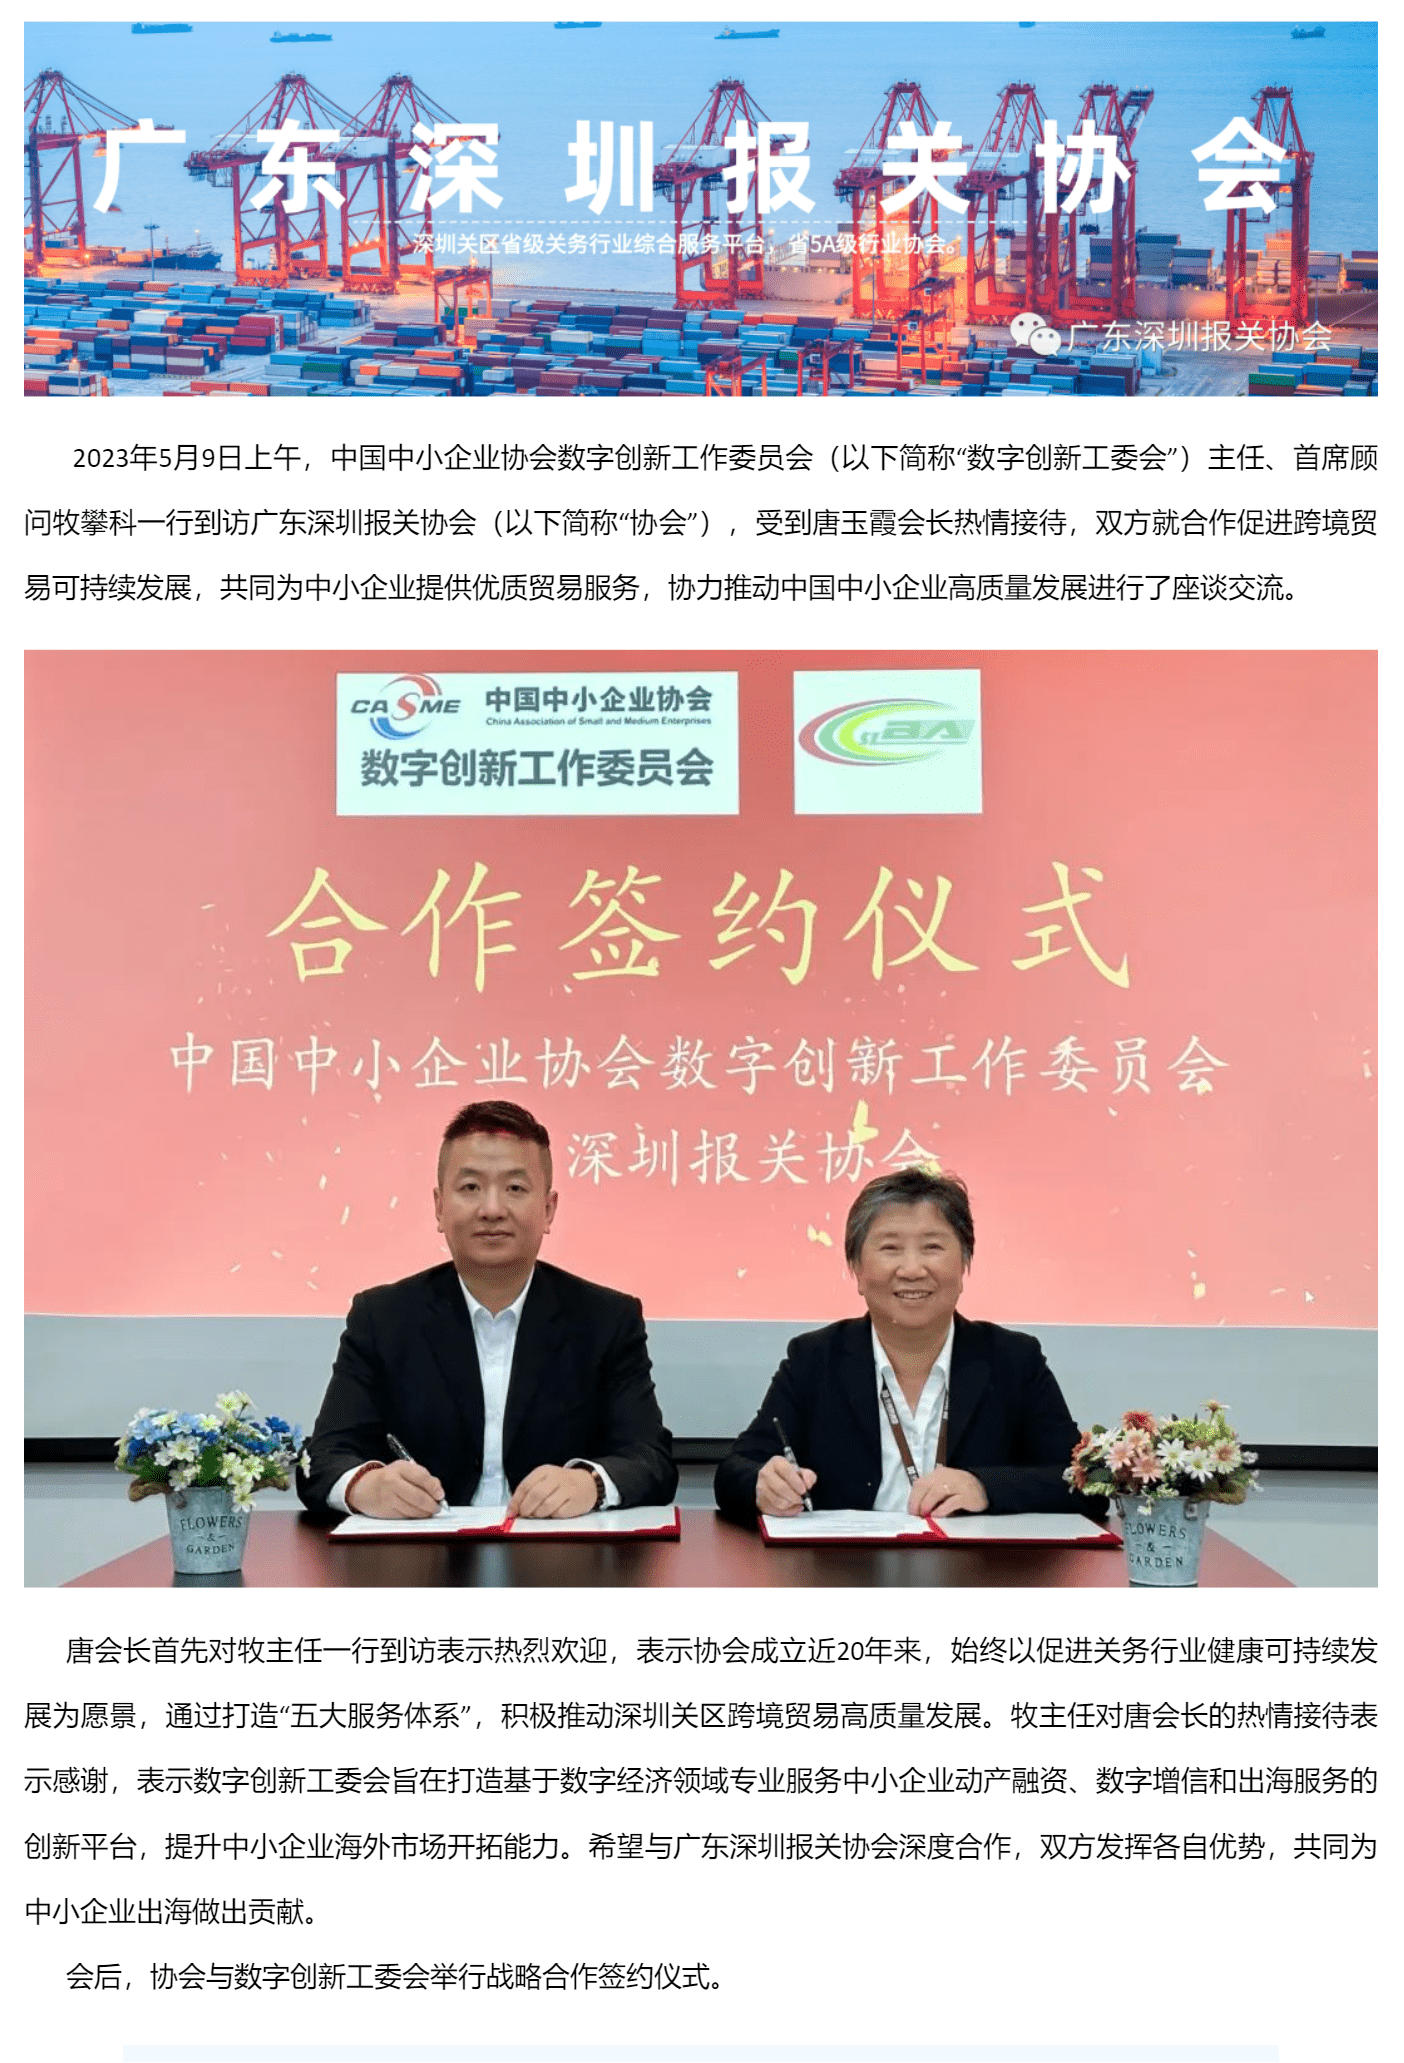 【协会动态】中国中小企业协会数字创新工作委员会到访协会_美编助手_pro.png